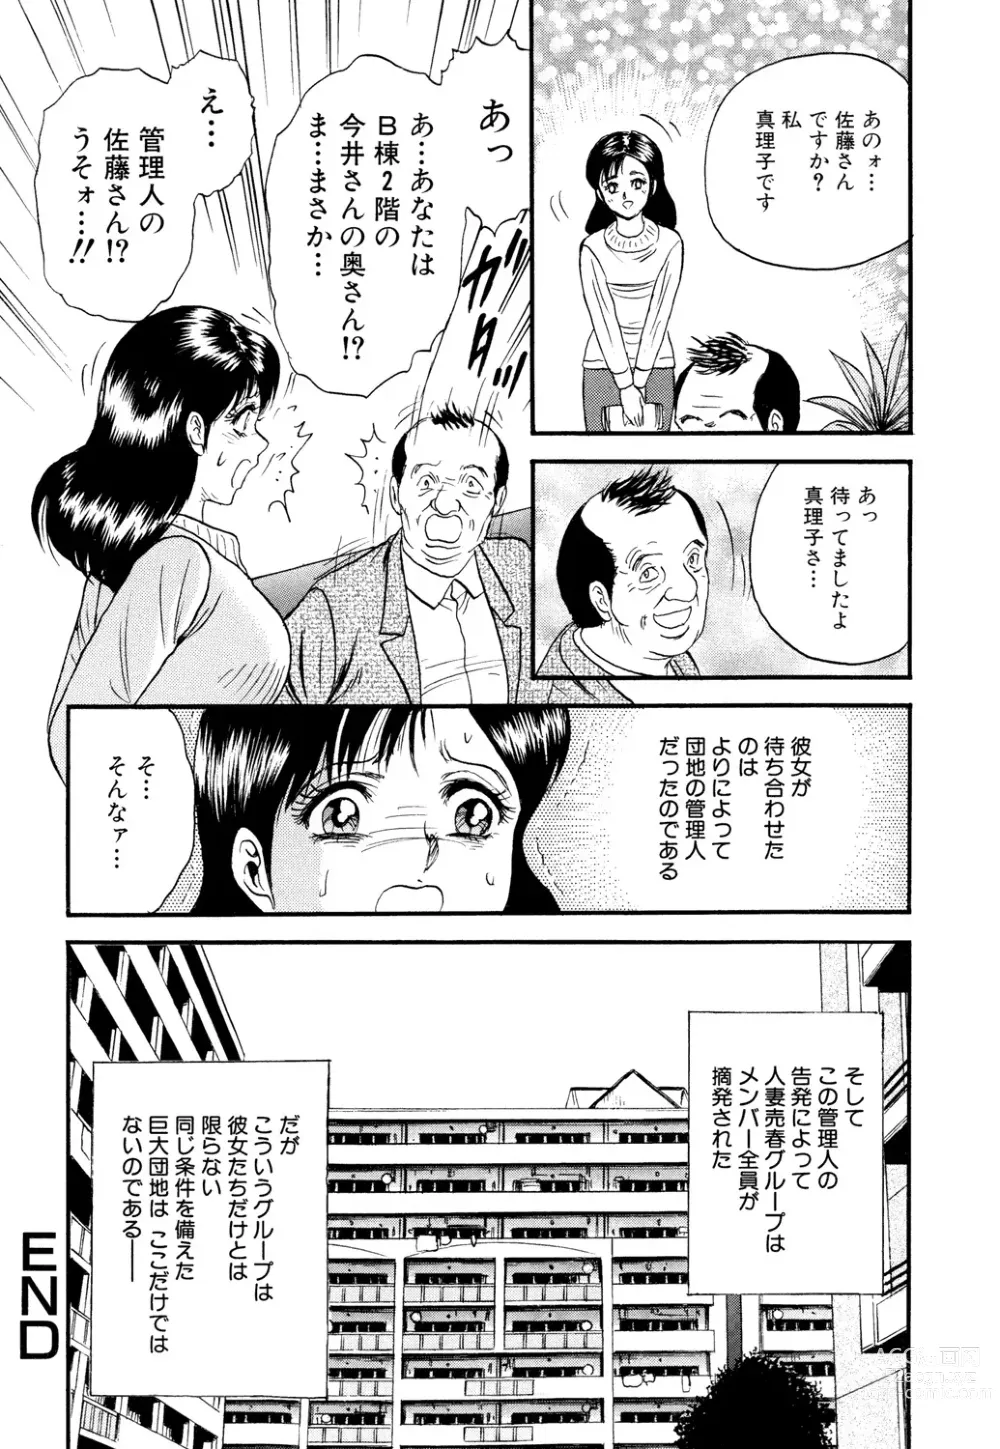 Page 146 of manga Nikuyoku no Utage